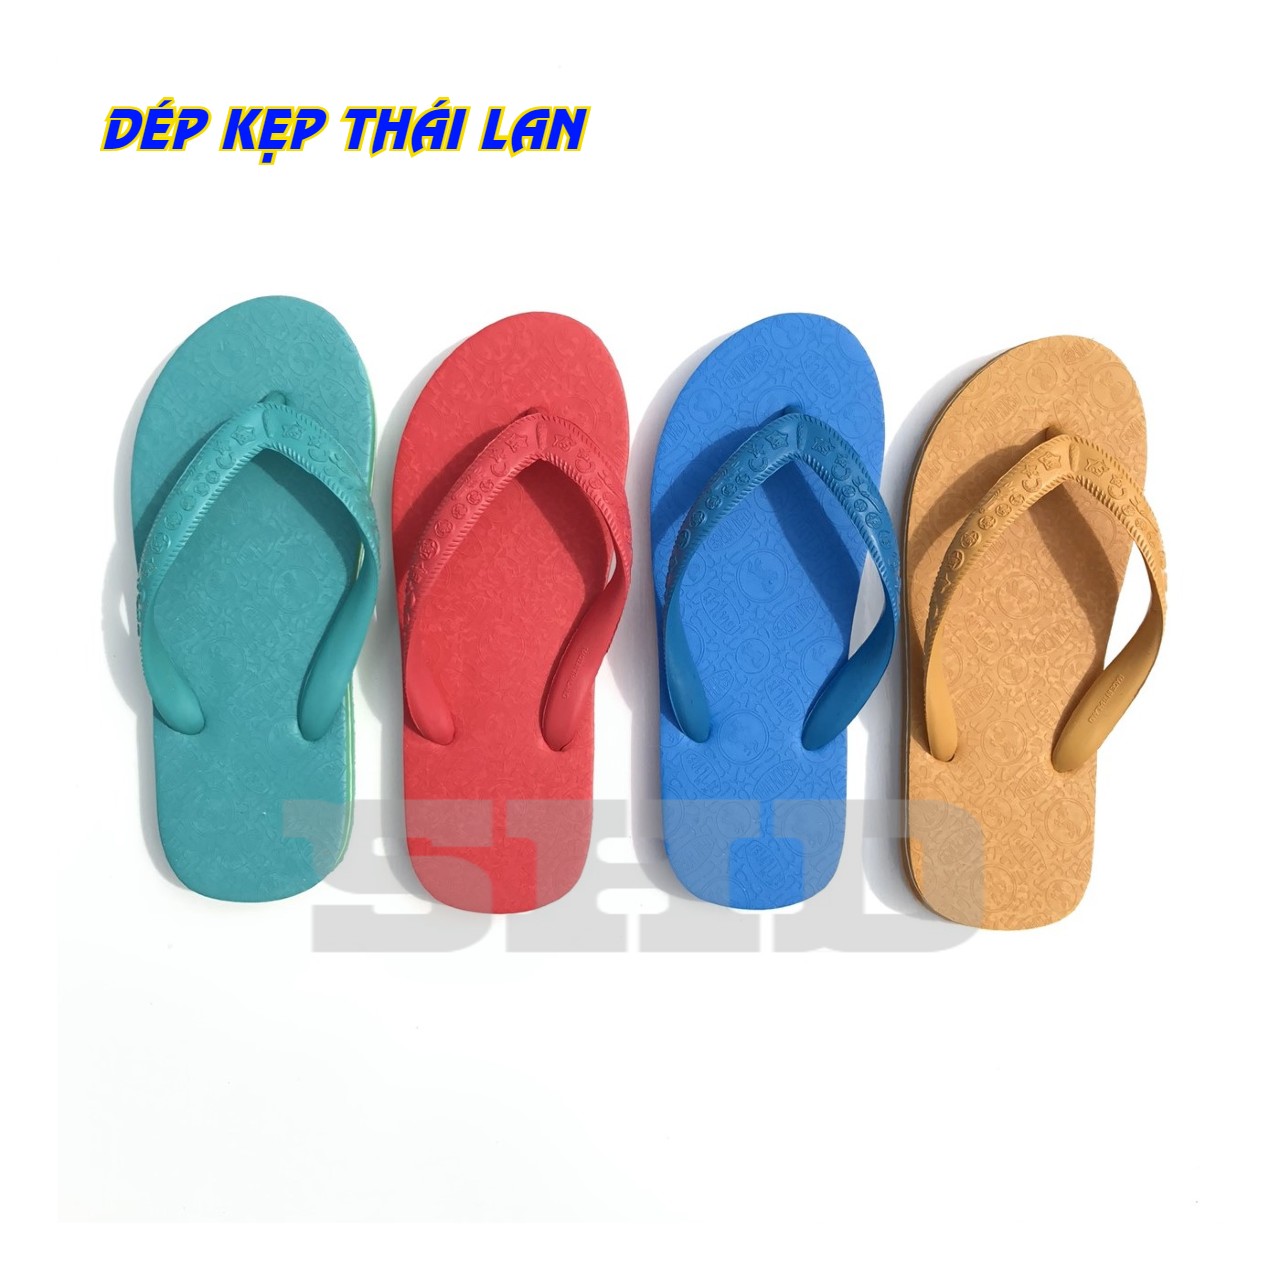 Bạn đang chuẩn bị cho một chuyến đi biển hoặc muốn có đôi giày trong nhà để tránh trơn trượt? Hãy xem hình ảnh về dép lào, một sản phẩm truyền thống của Việt Nam, với đặc tính chống trơn trượt và thiết kế đơn giản nhưng đẹp mắt.